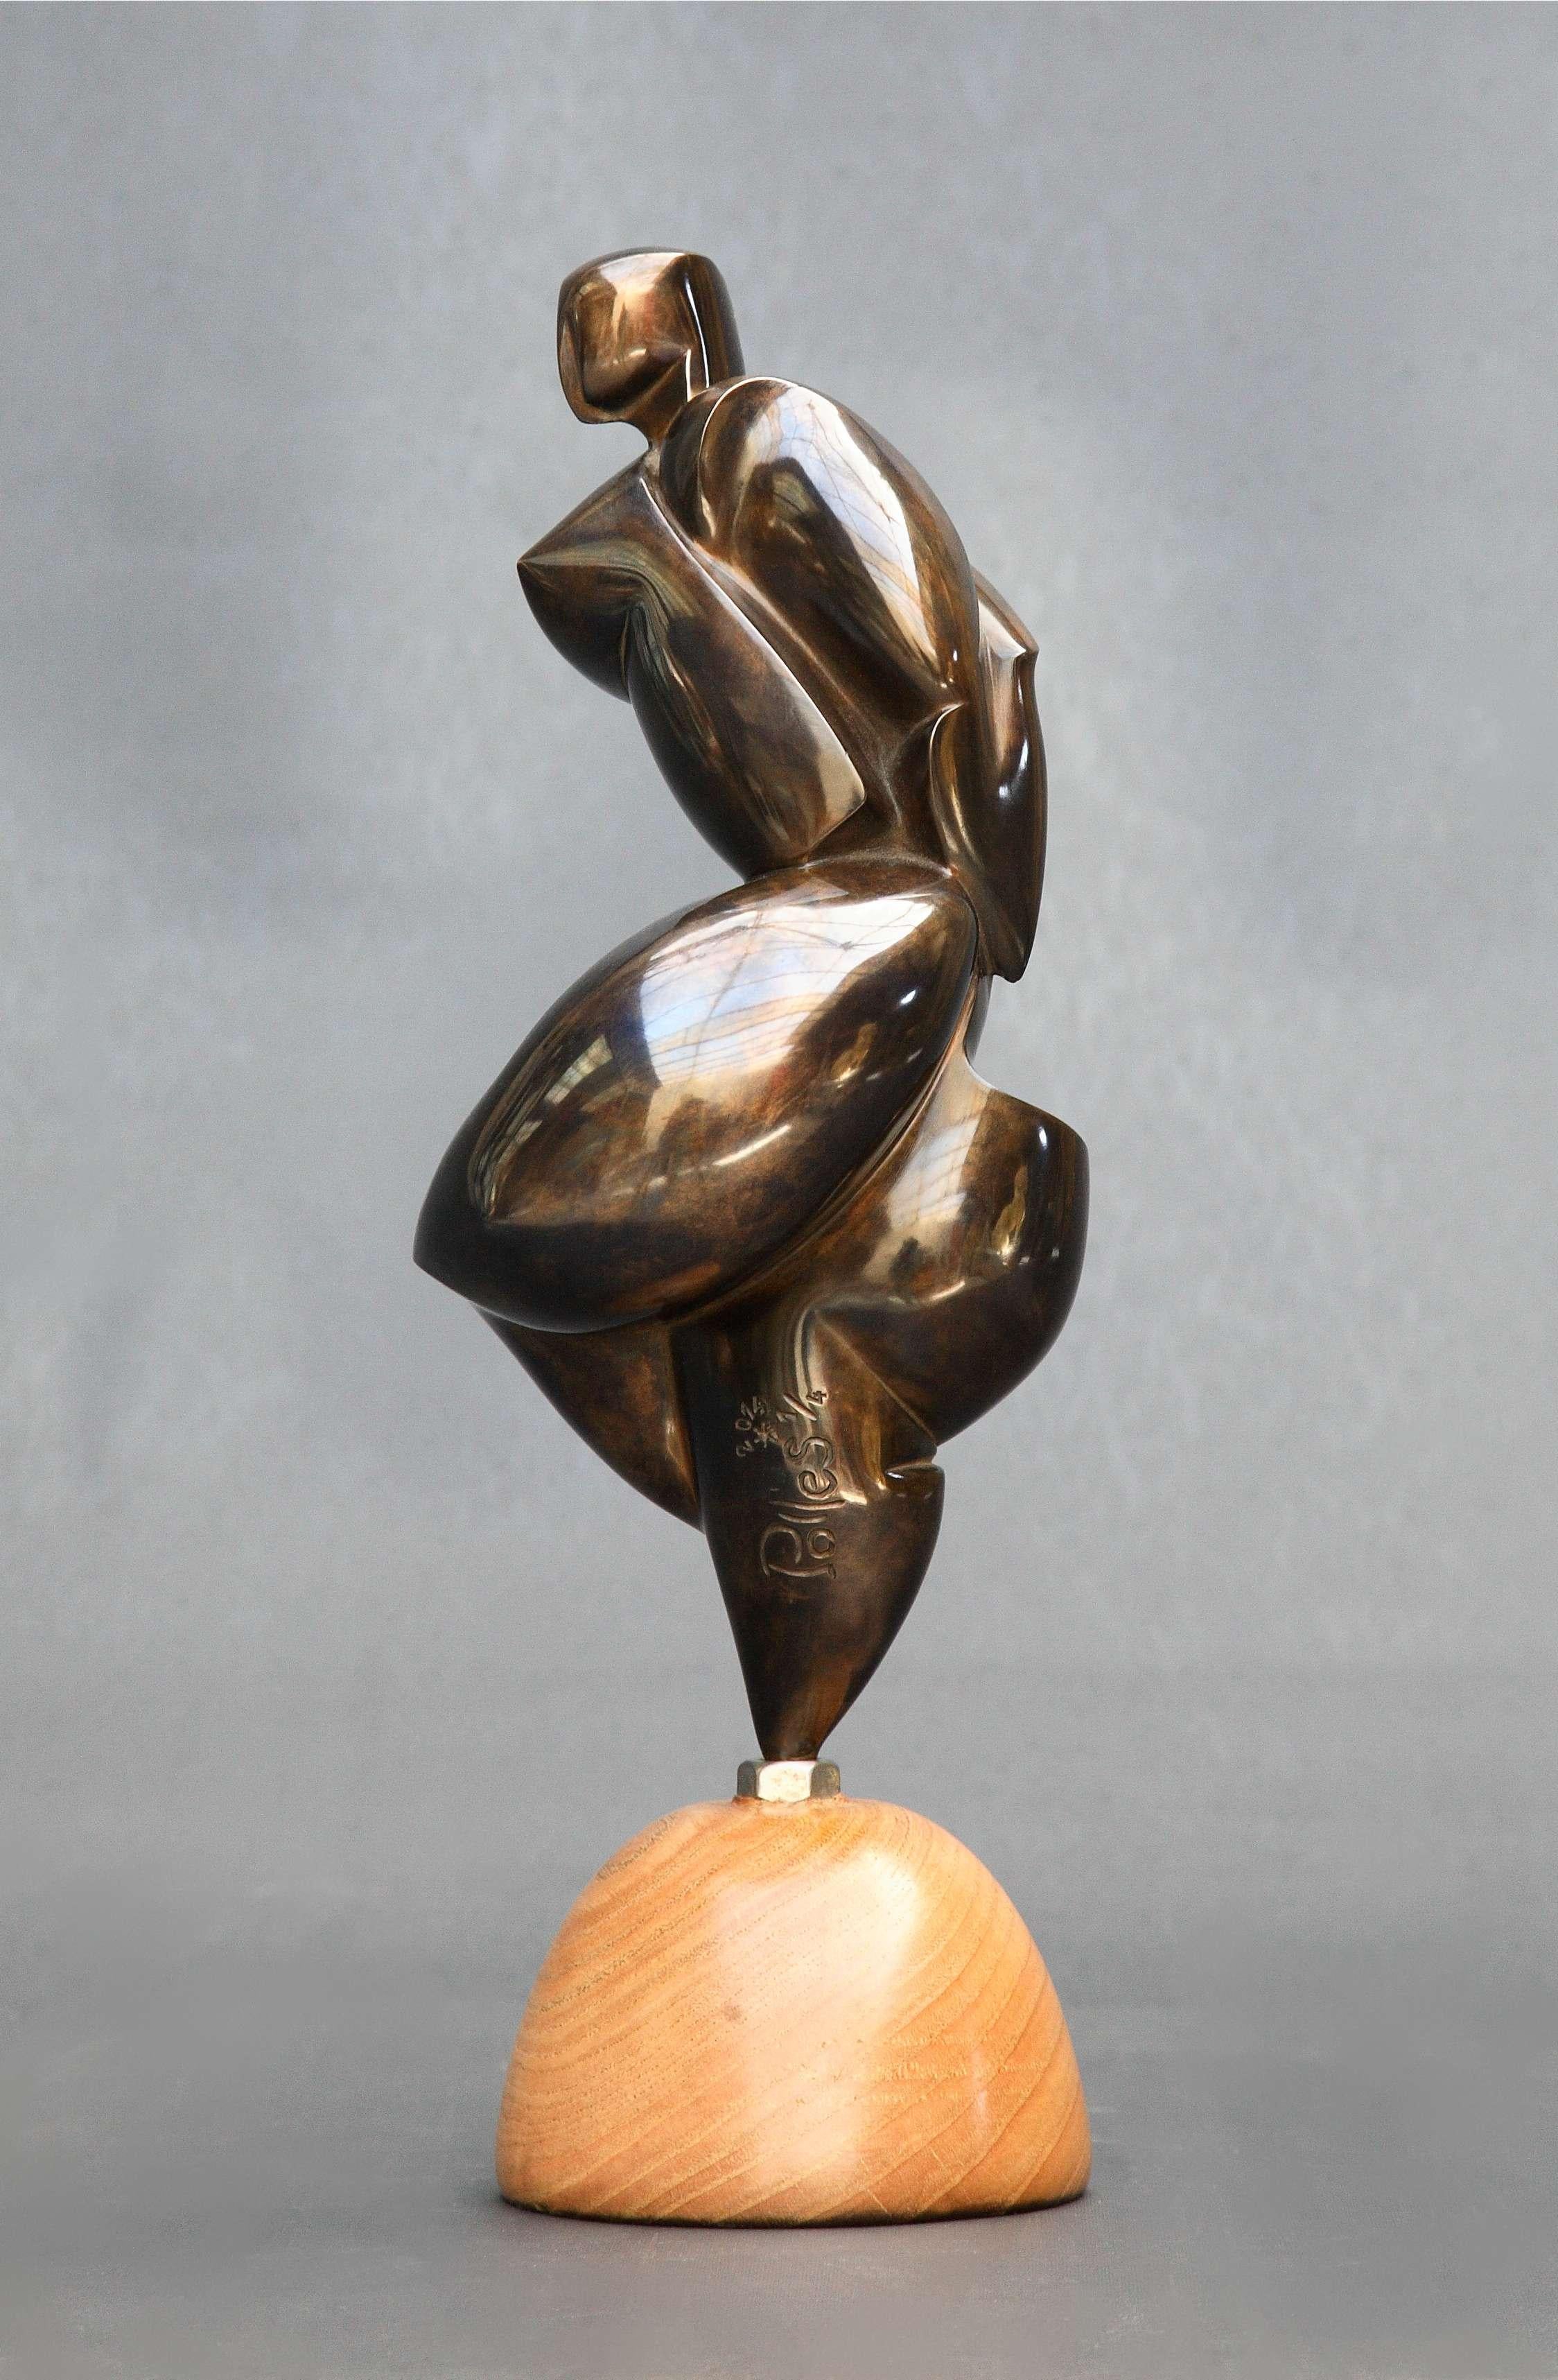 Pollès - Bronze-Skulptur - Ahlem
Bronze
1/4
Erstellt im Jahr 2013, gecastet im Jahr 2014
20 x 13 x 11 cm
Signiert und nummeriert

BIOGRAPHIE
Pollès wurde 1945 in Paris geboren
Wie Leonard de Vinci auf der Suche nach anatomischer Perfektion, nach der